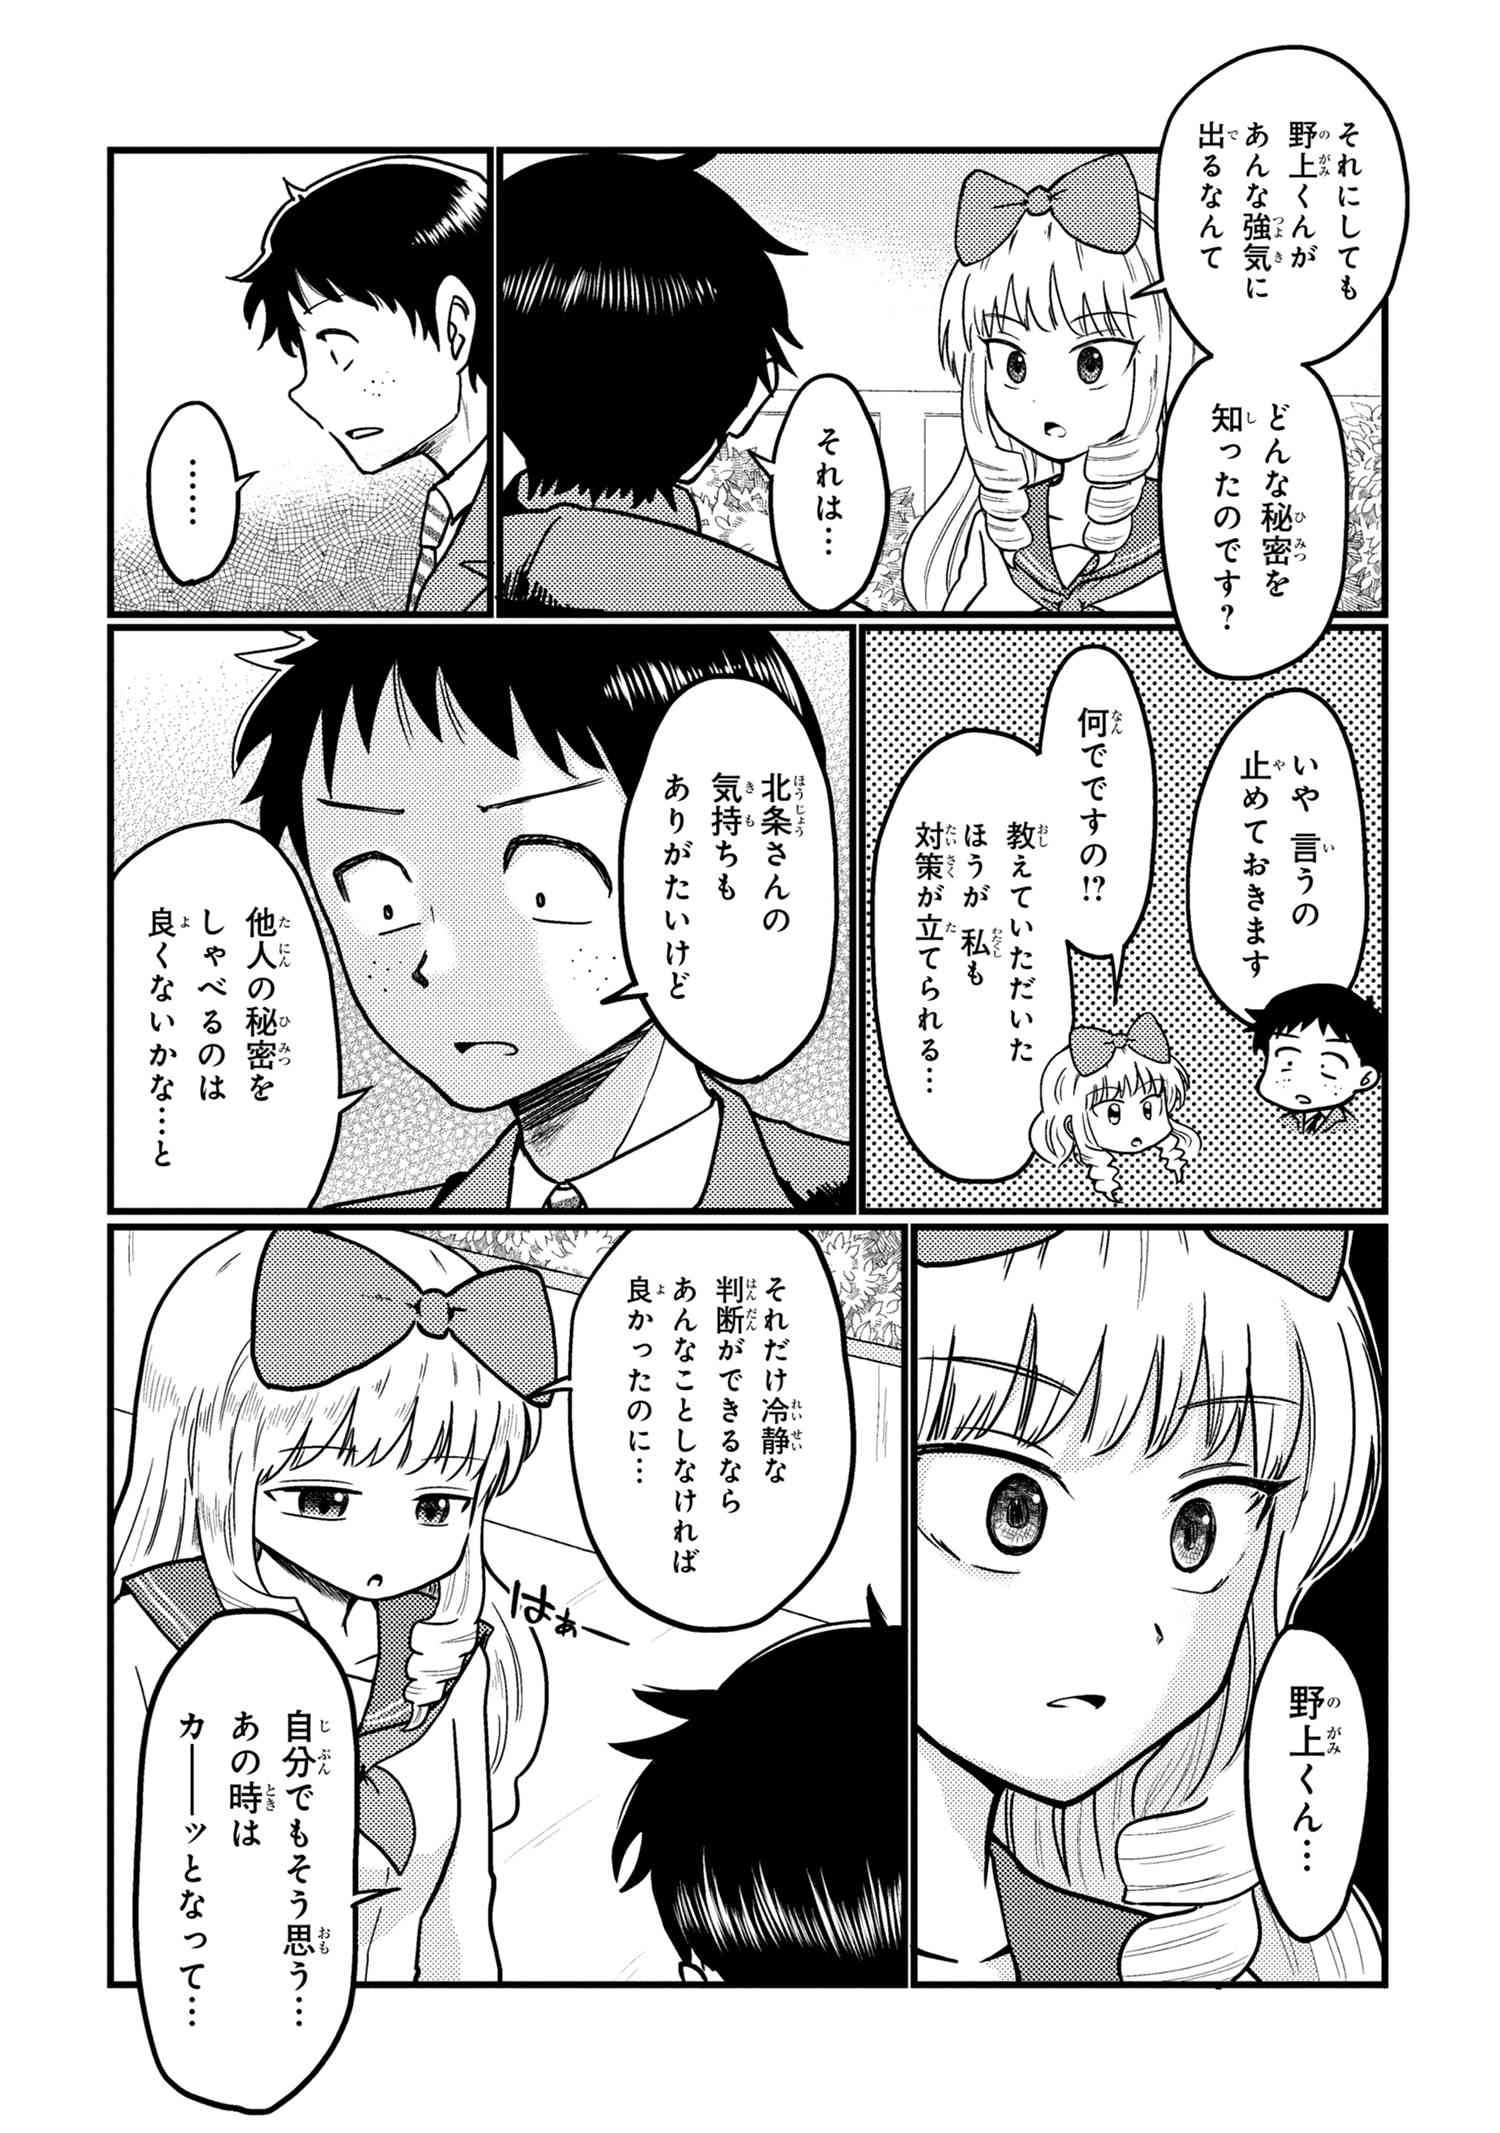 Houjou Urara no renai shousetsu o kaki nasai! - Chapter 13 - Page 2